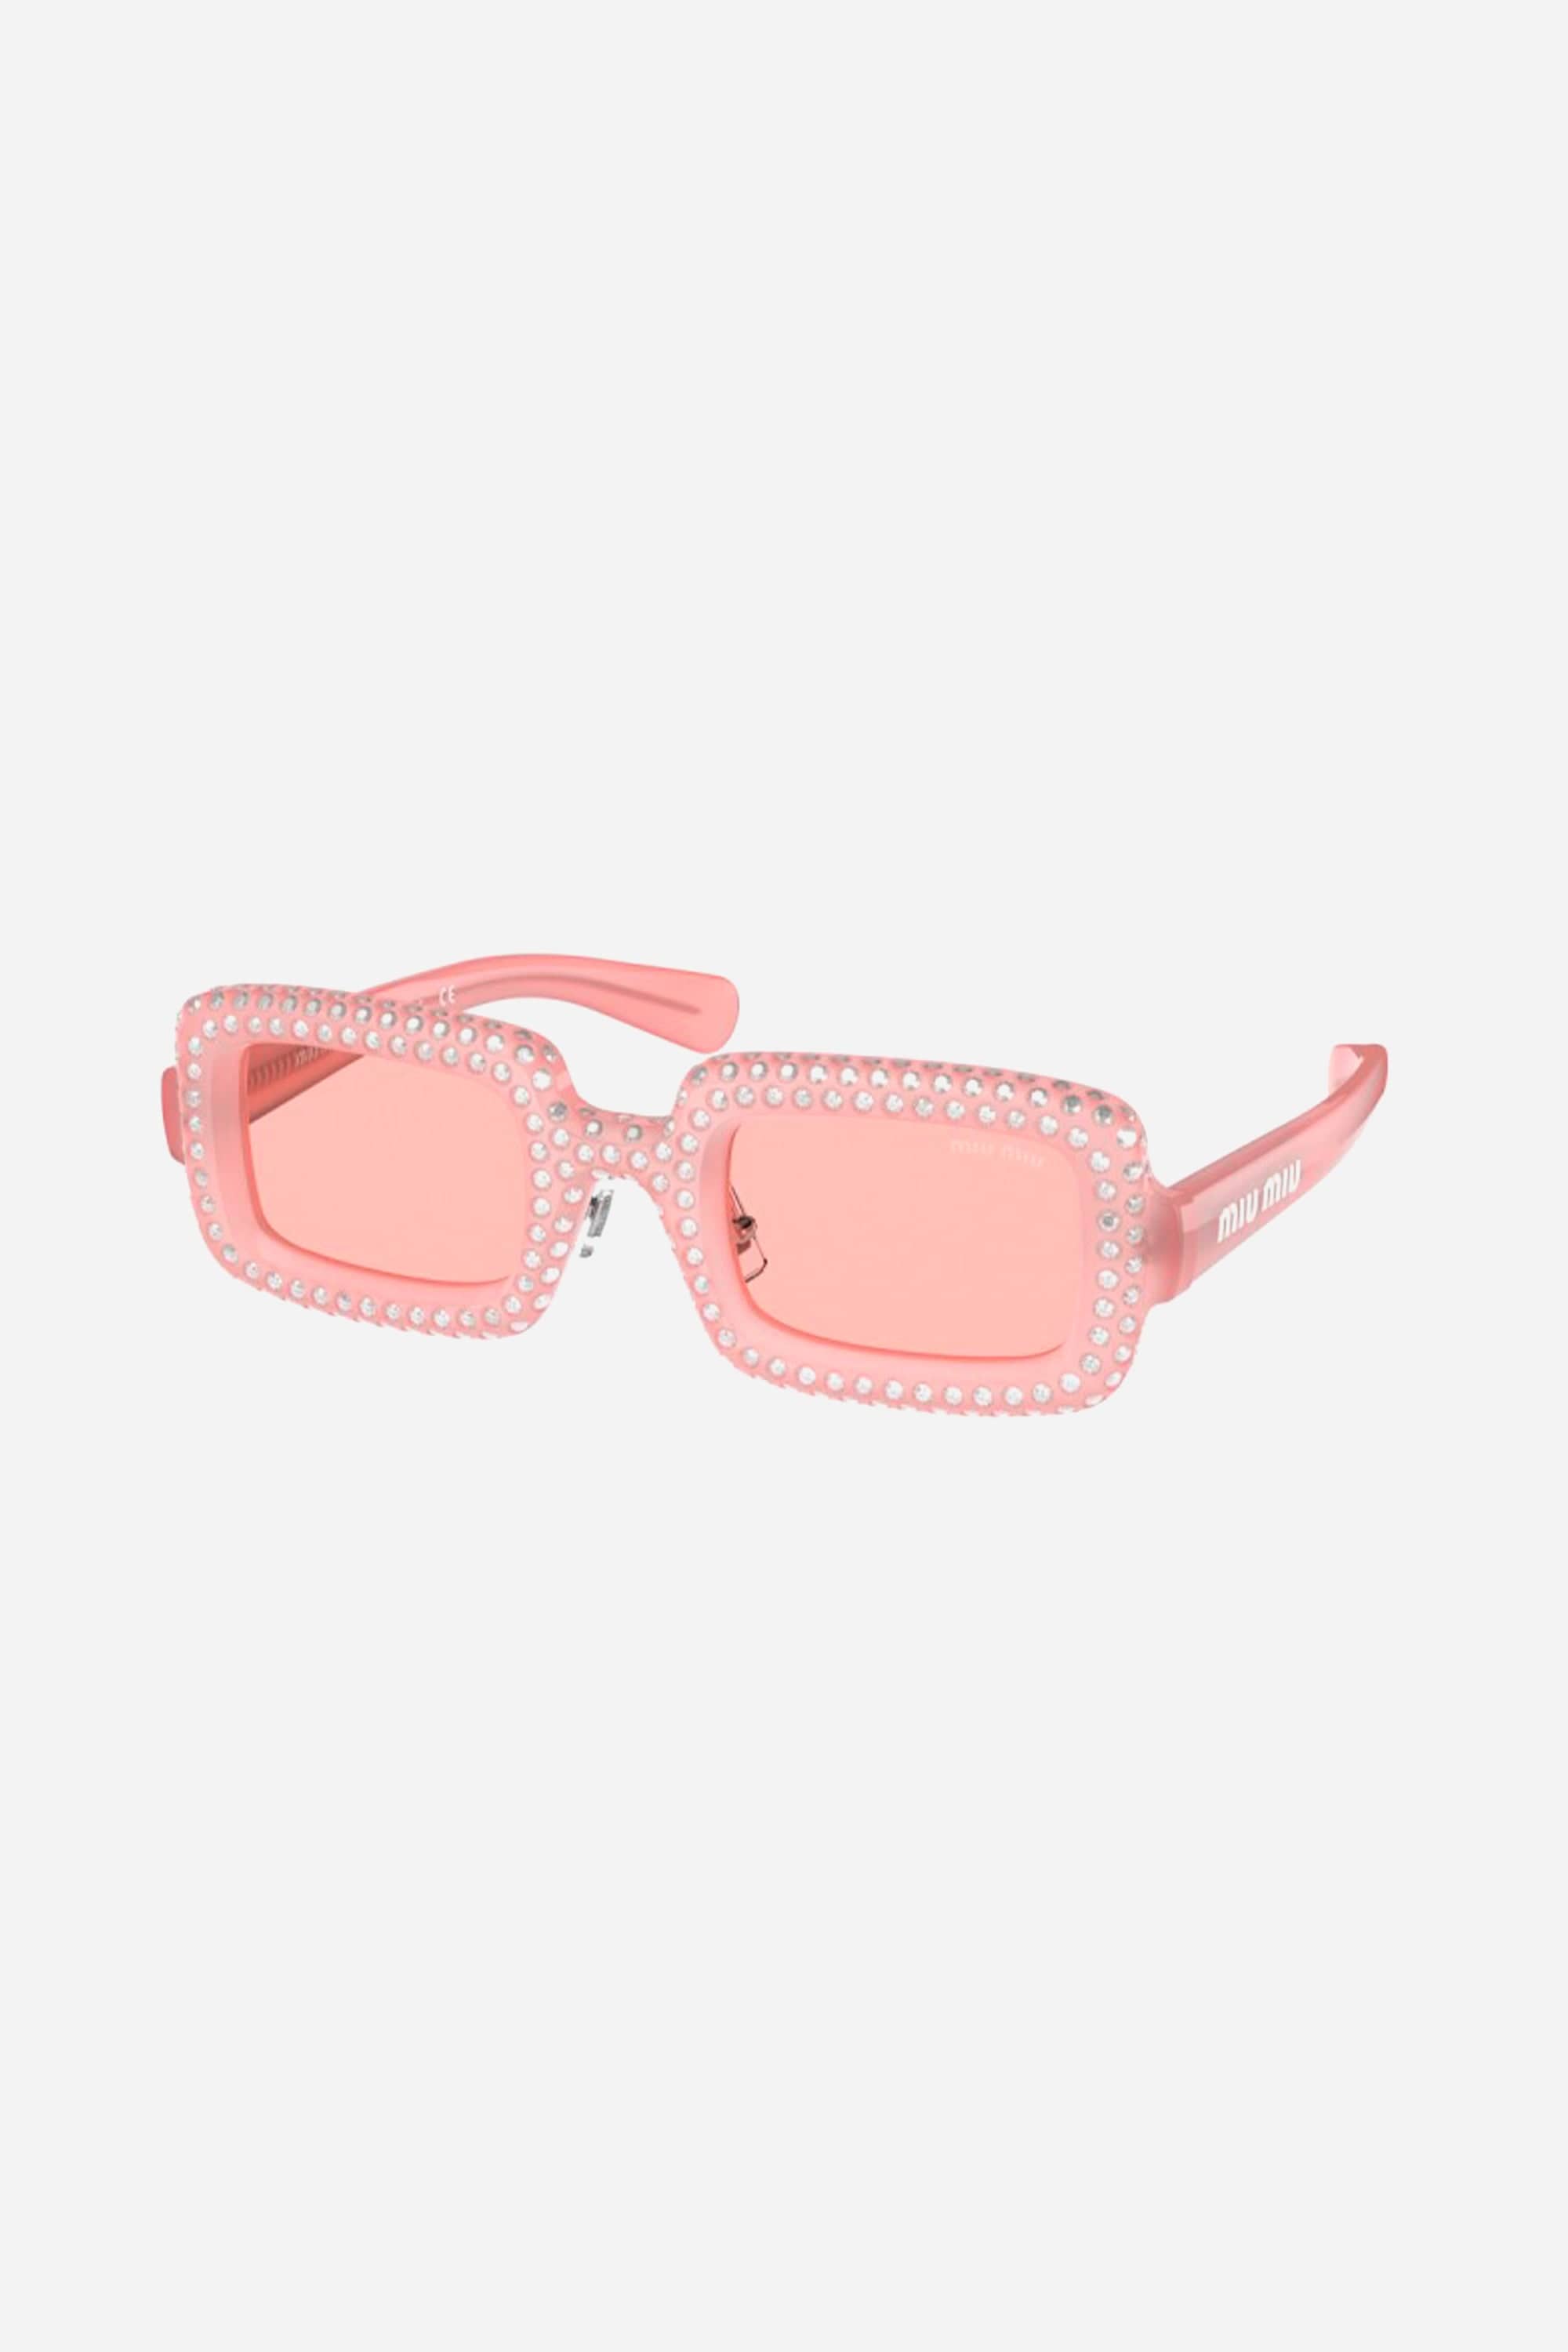 Miu Miu rectangular acetate sparkly crystal pink sunglasses - Eyewear Club